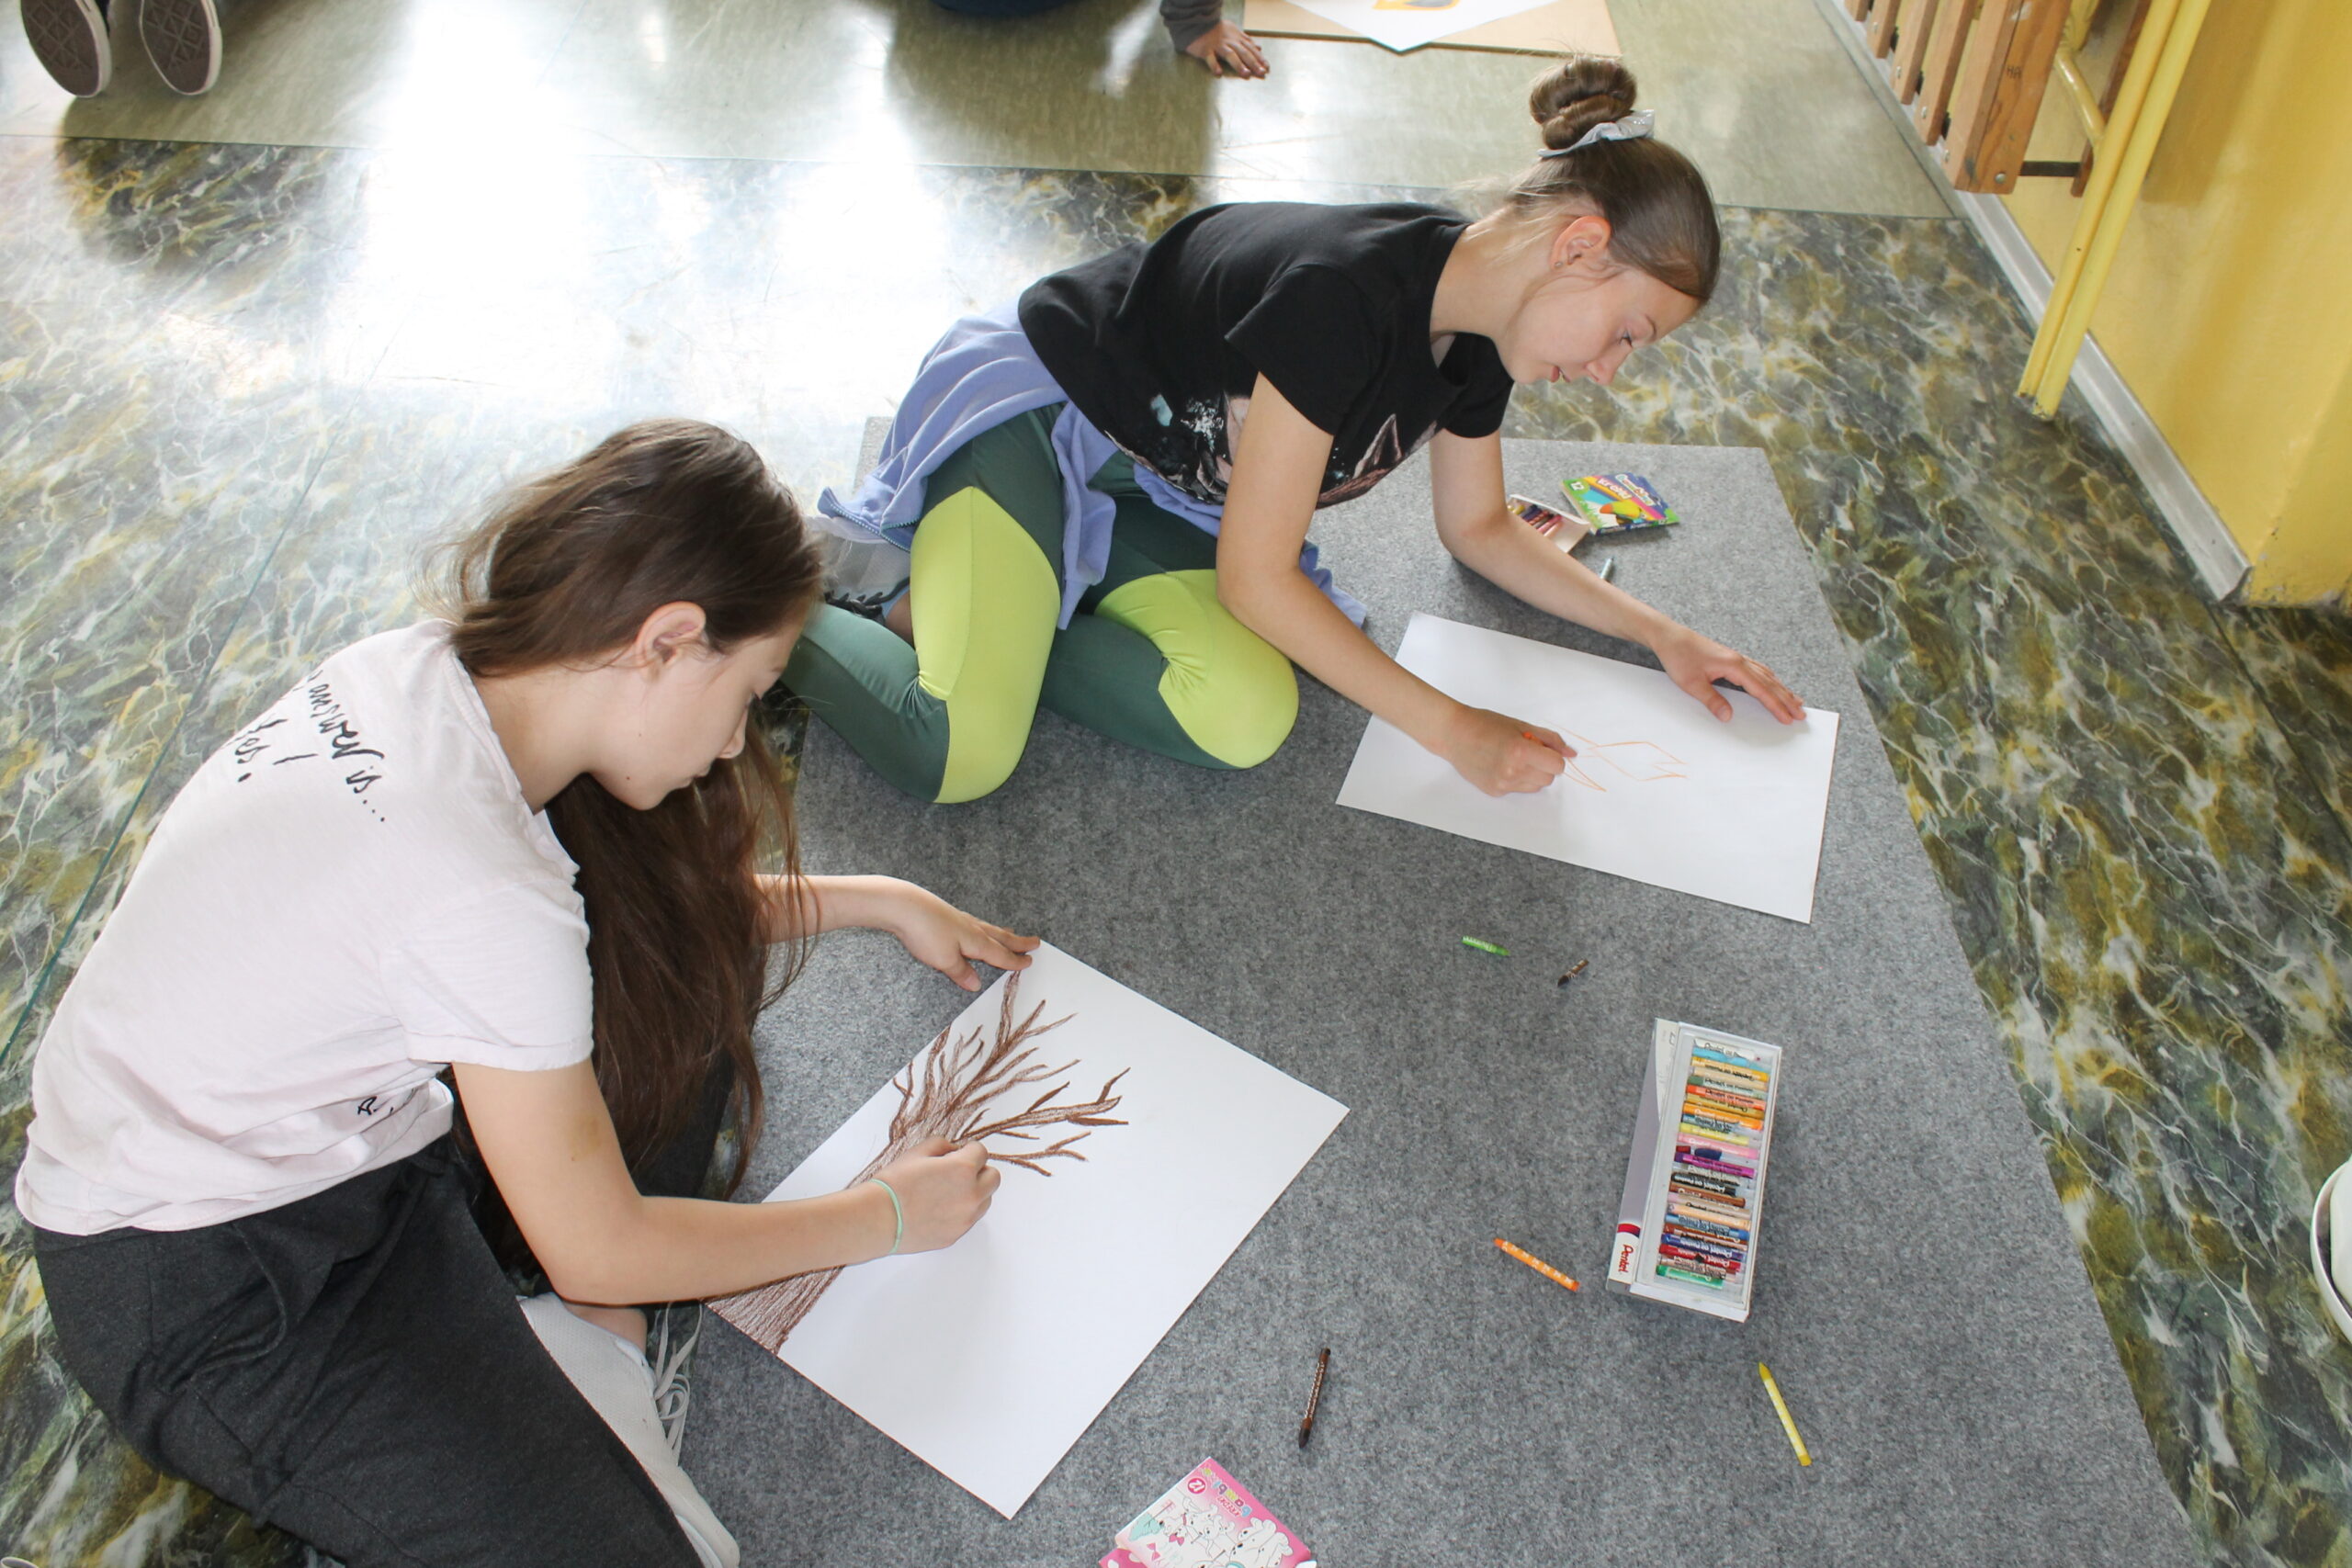 Święto Szkoły maj 2023. Uczniowie po uroczystej akademii biorą udział w zabawach na terenie szkoły - malowanie